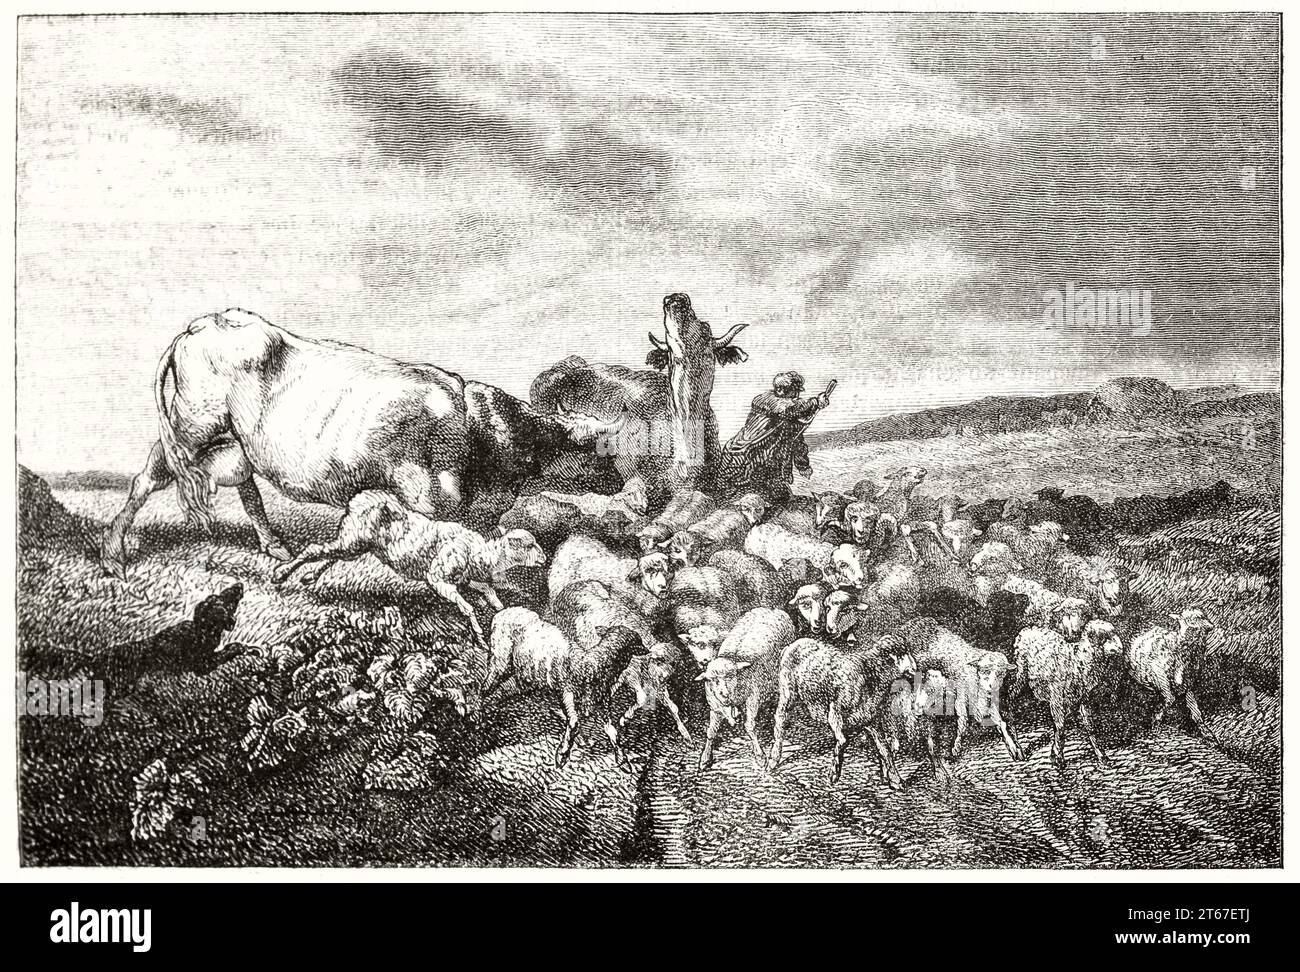 Vieille illustration de moutons, vaches et berger. Par Daubigny, publ. Sur magasin pittoresque, Paris, 1851 Banque D'Images